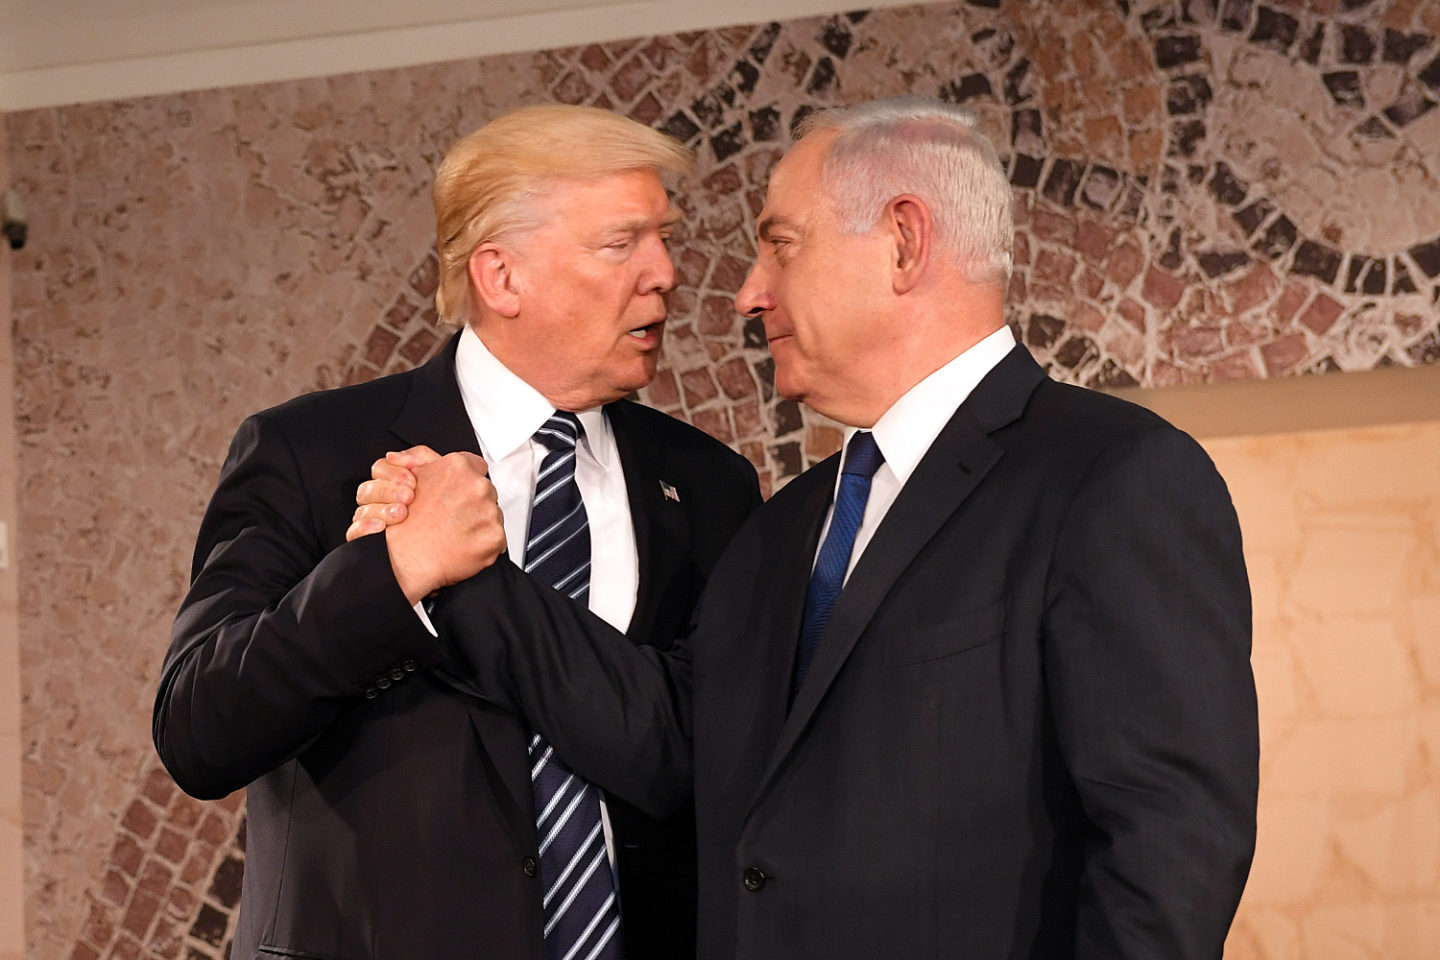 Plan, który nie przyniesie pokoju. O propozycji Trumpa dla Izraela i Palestyny